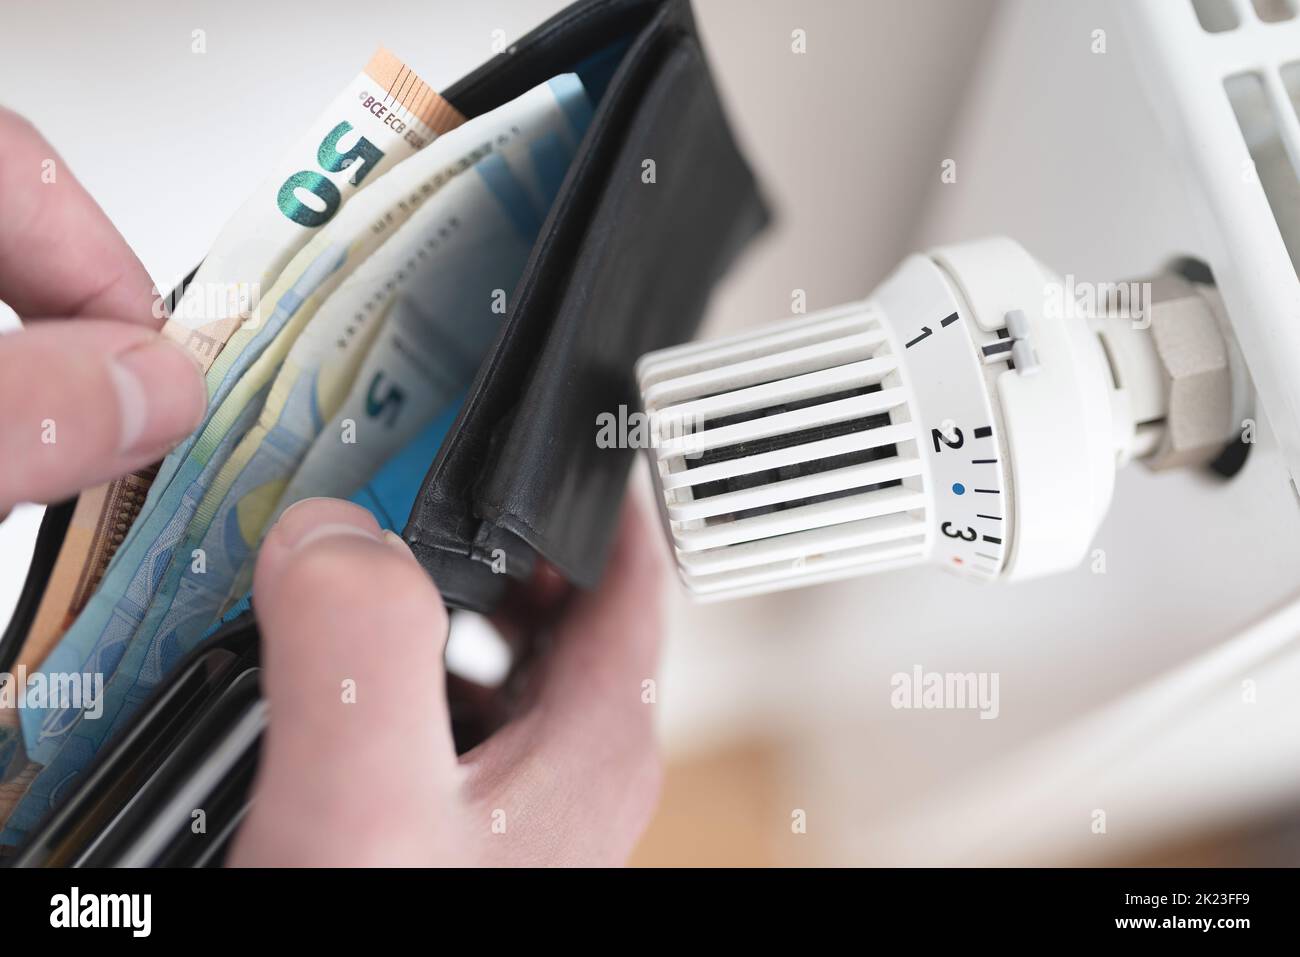 Nahaufnahme der Person, die ihre Brieftasche mit Bargeld neben dem heruntergedrehten Thermostat am Heizkörper hält, Konzept für steigende Energie- und Heizkosten Stockfoto